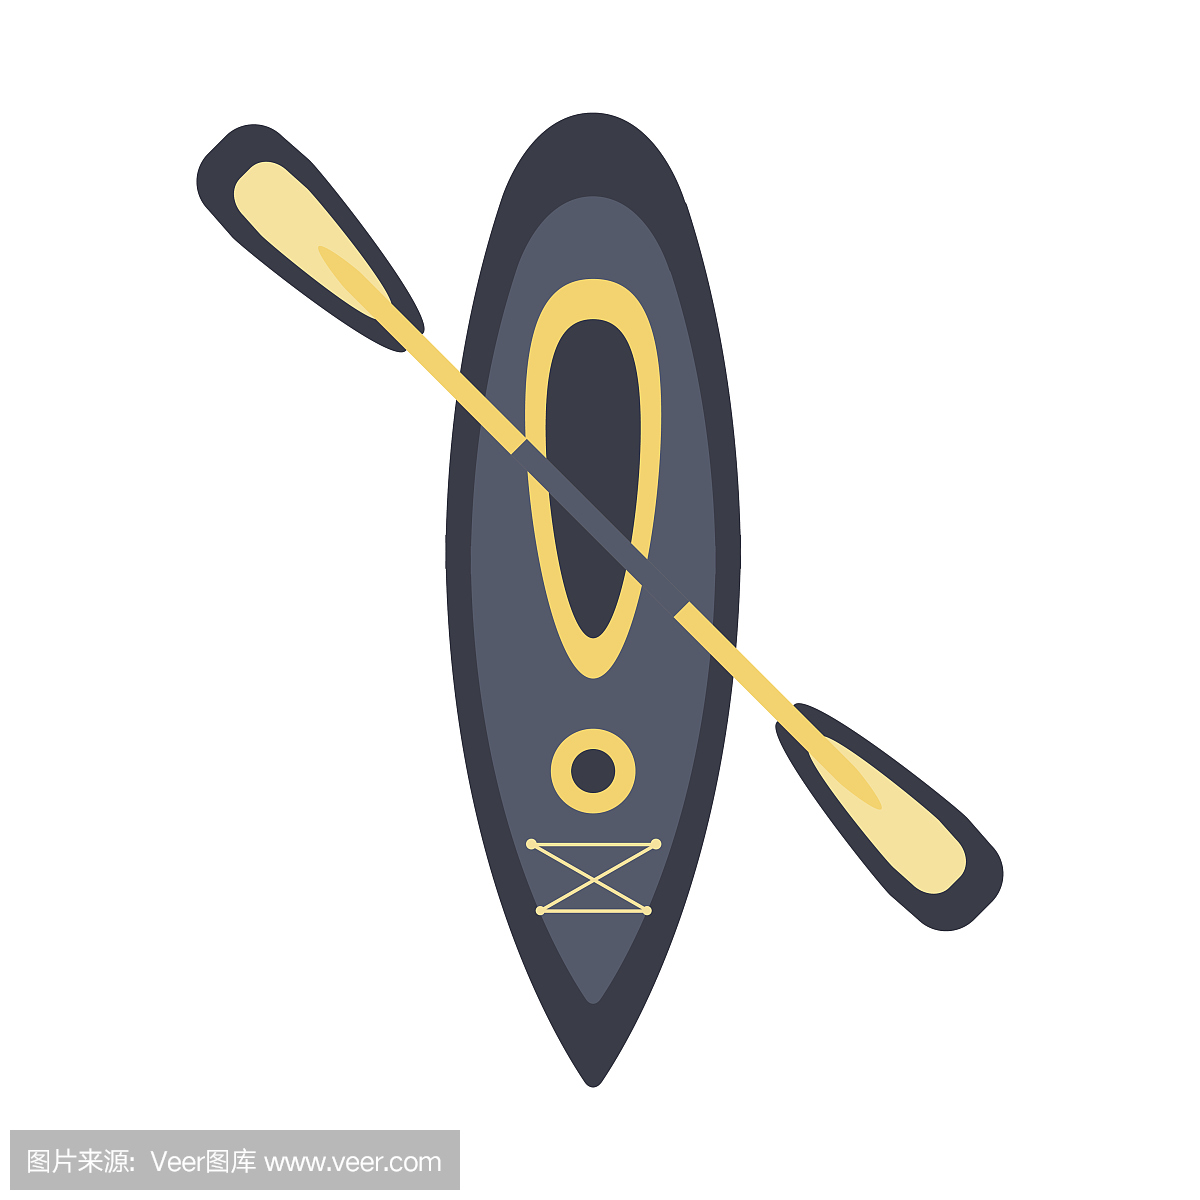 灰色皮艇为一个人与双桨,简单的平面矢量插图的船和水运动系列的一部分